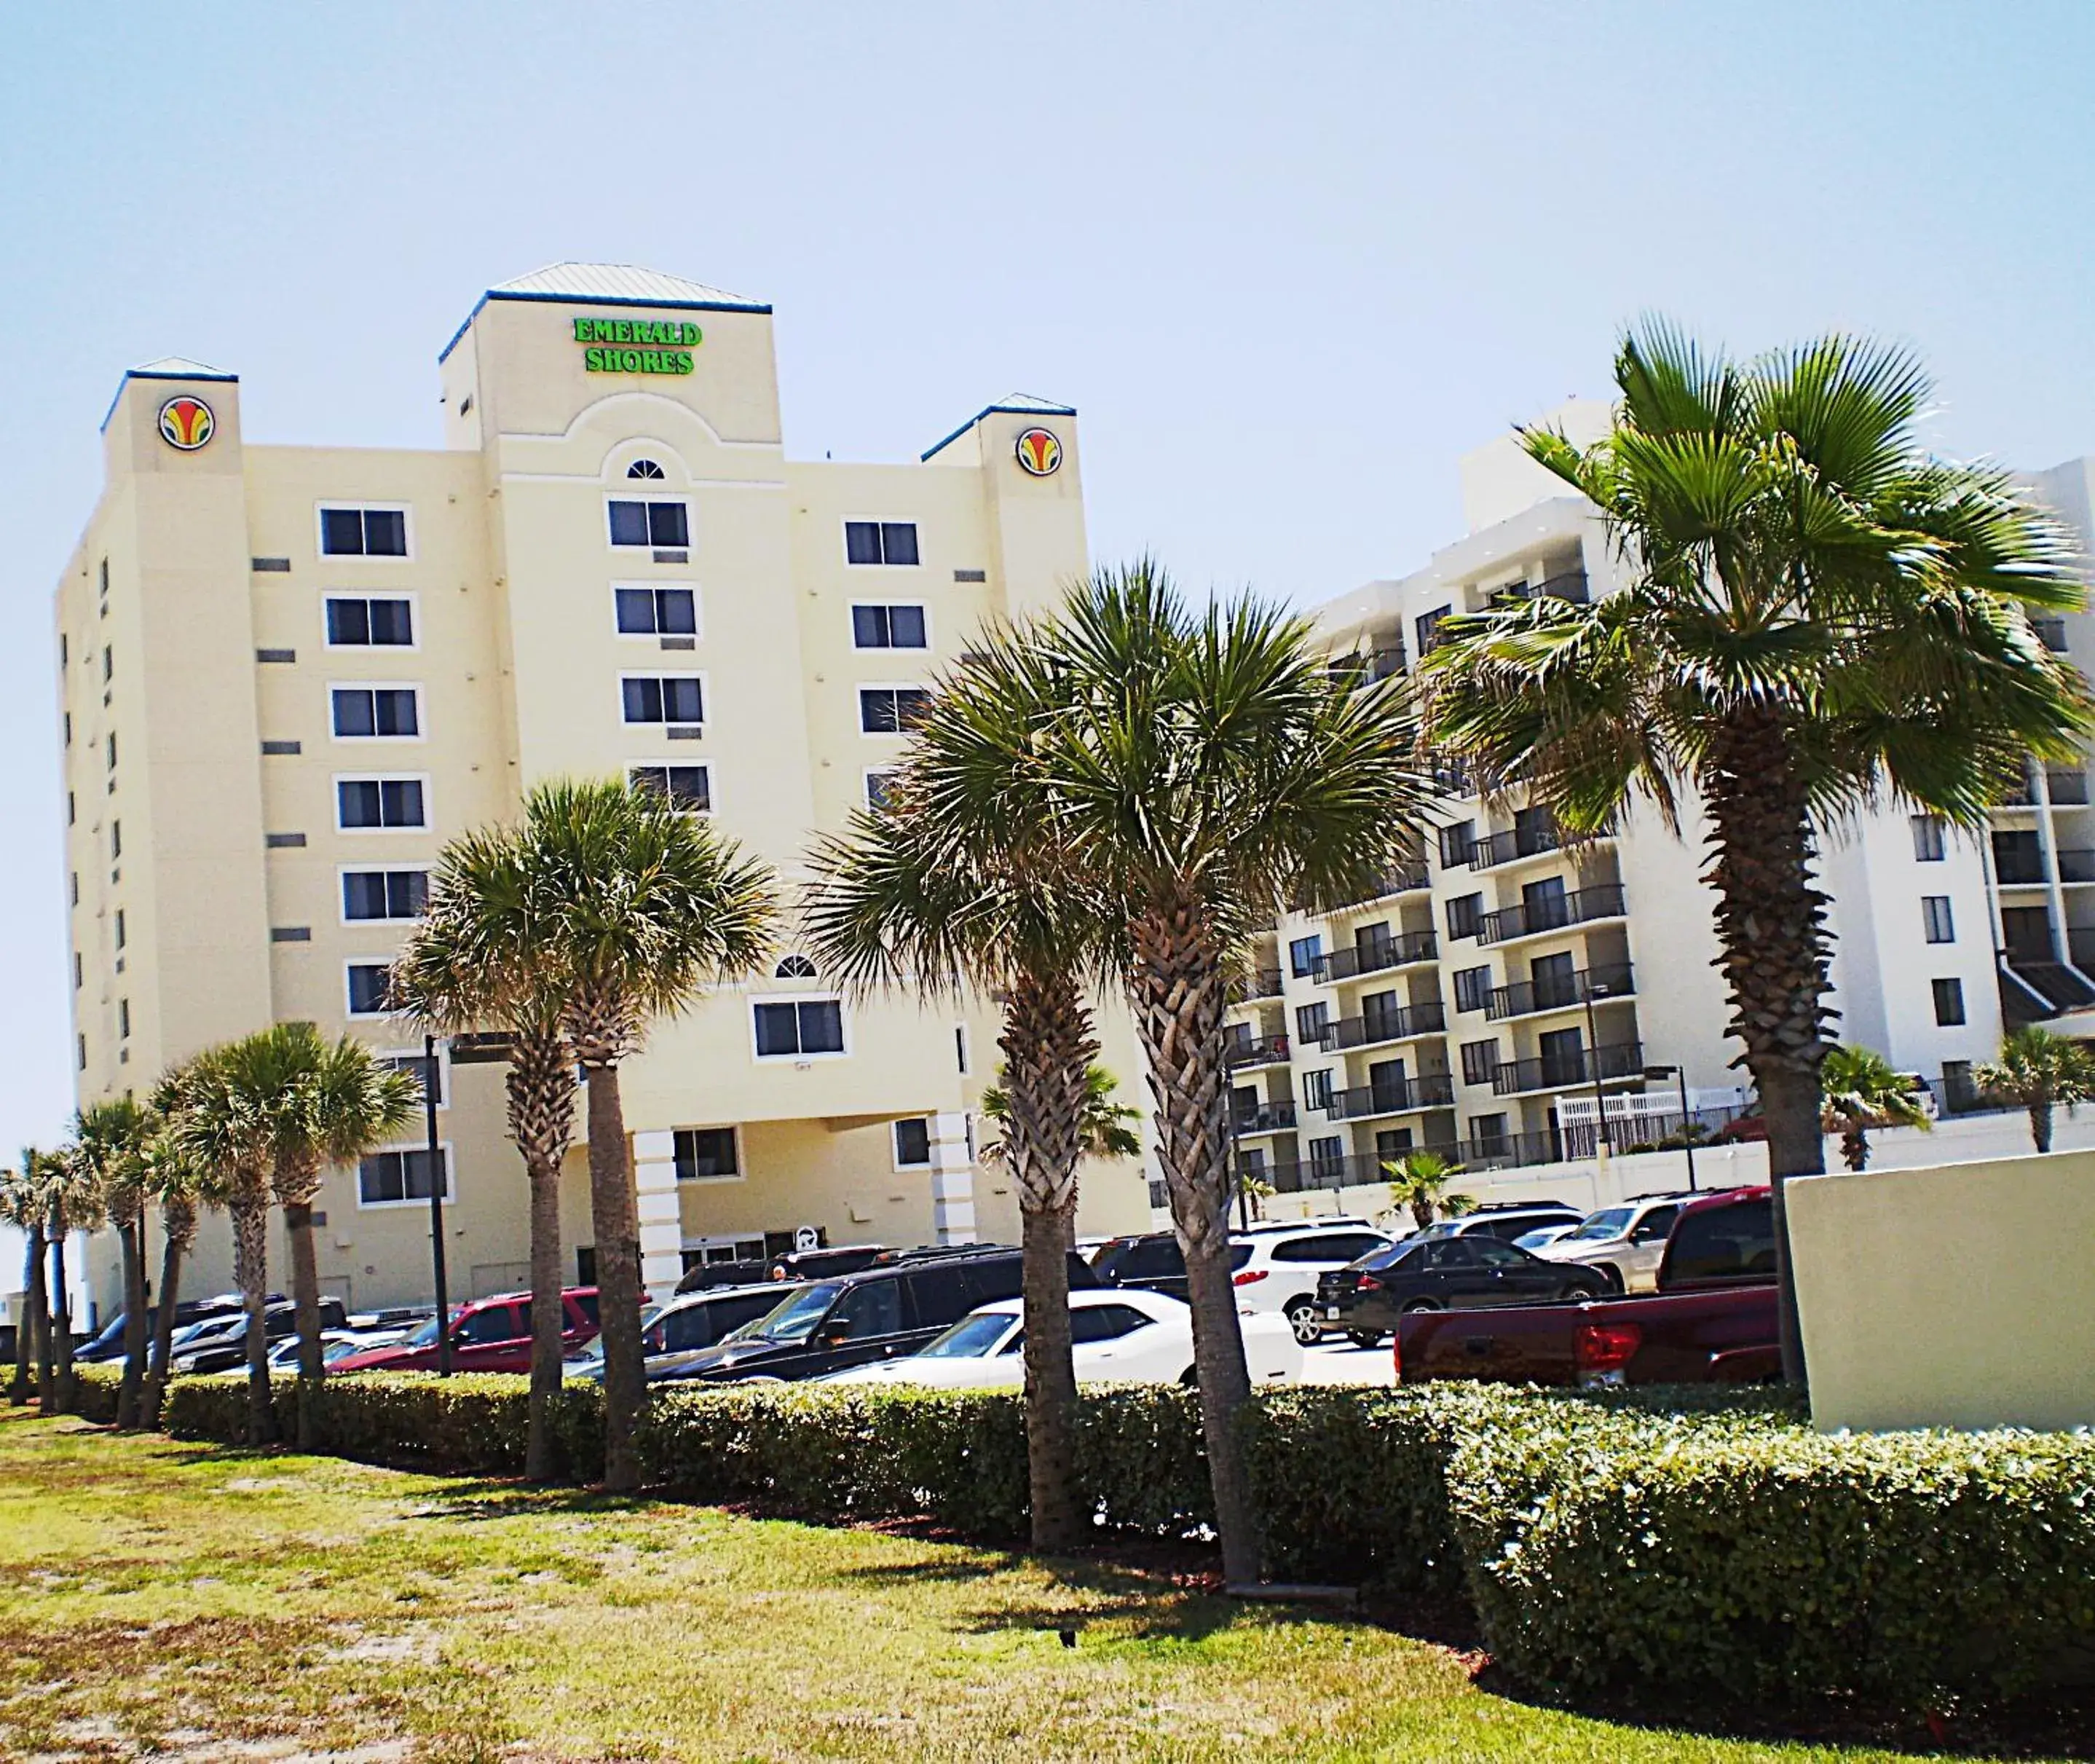 Facade/entrance, Property Building in Emerald Shores Hotel - Daytona Beach